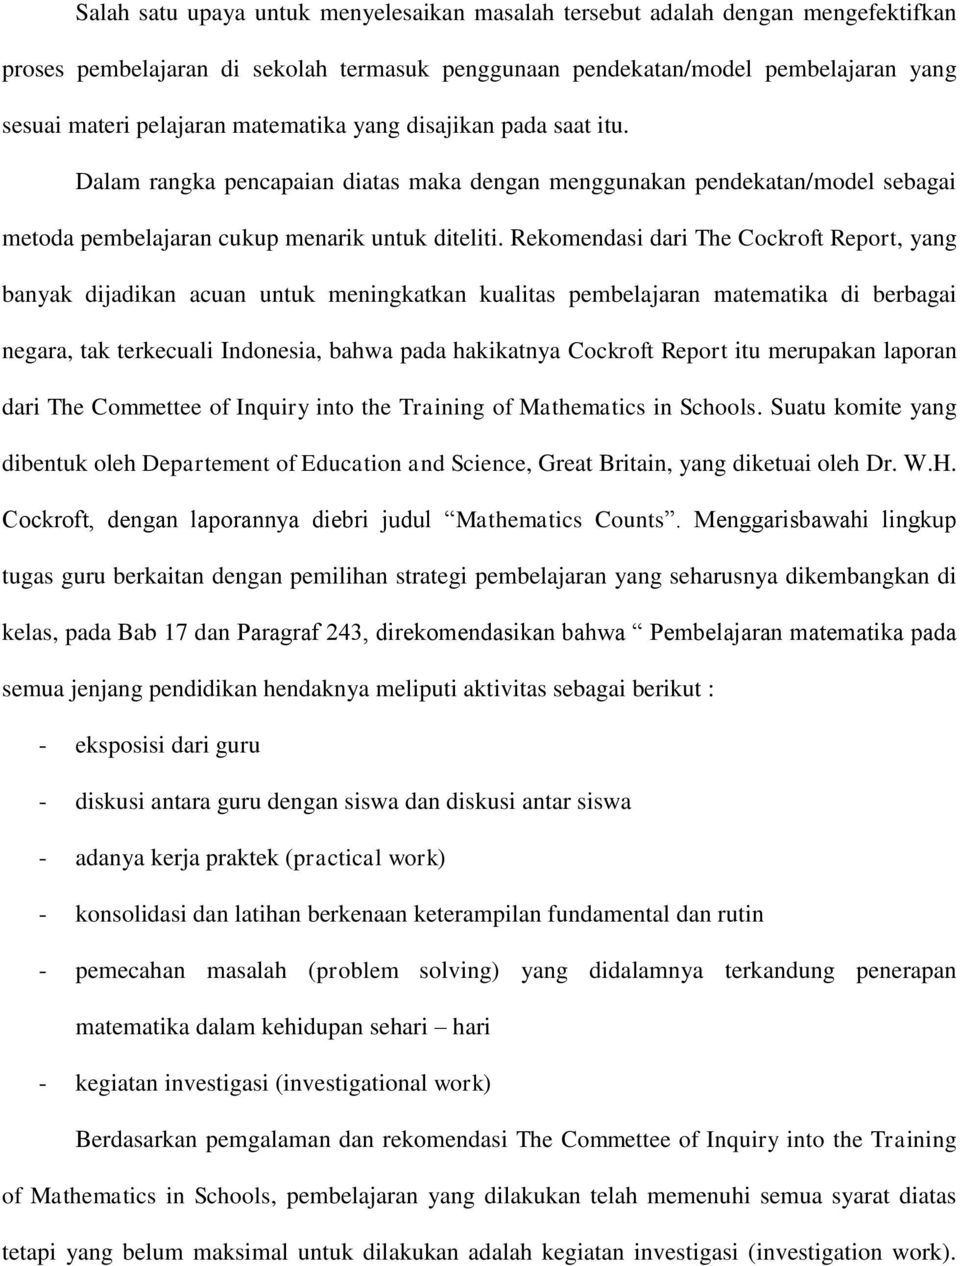 Rekomendasi dari The Cockroft Report, yang banyak dijadikan acuan untuk meningkatkan kualitas pembelajaran matematika di berbagai negara, tak terkecuali Indonesia, bahwa pada hakikatnya Cockroft